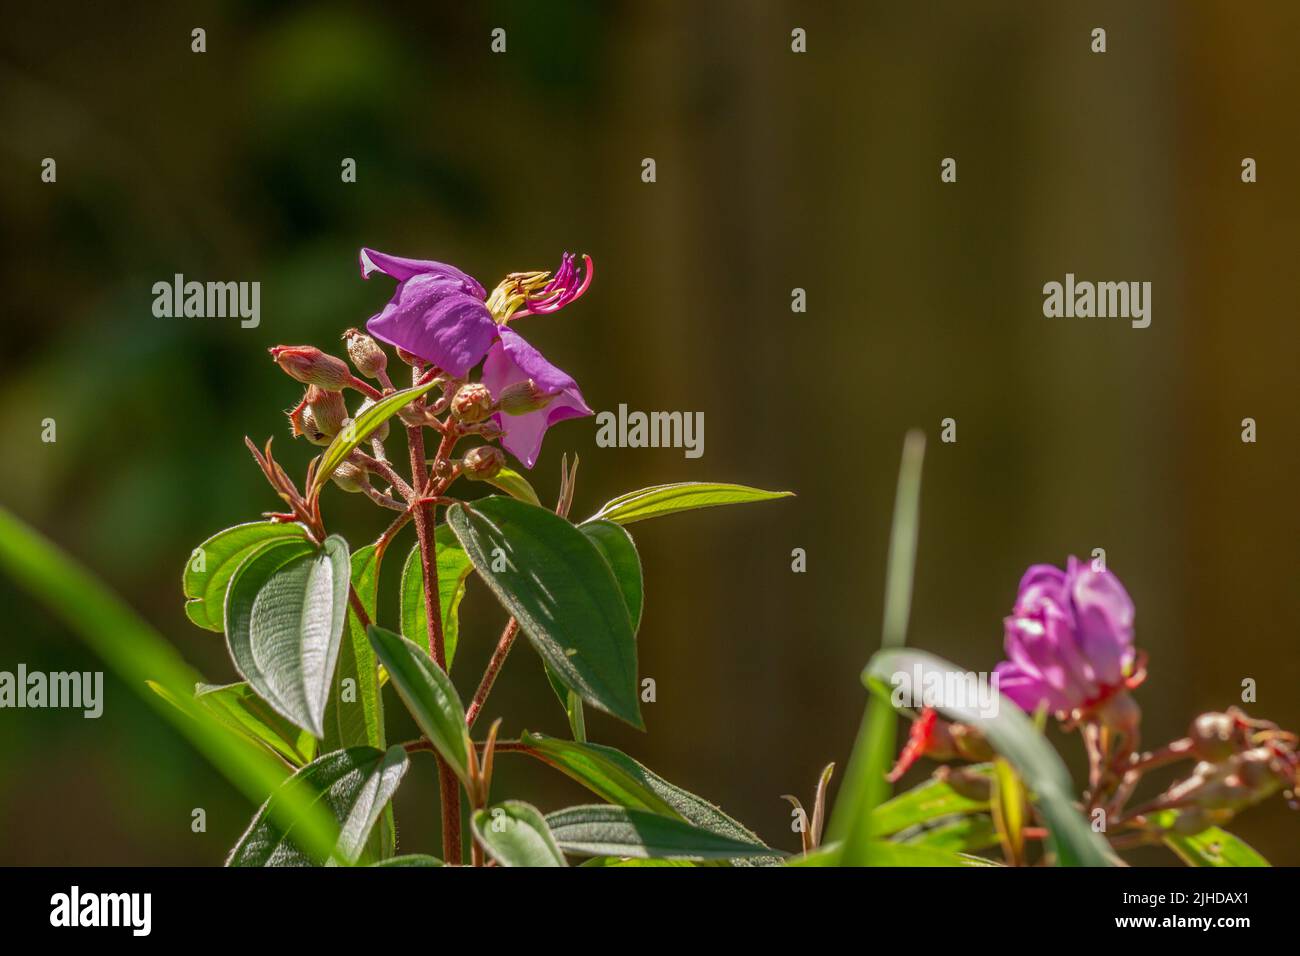 Fleurs et fruits de la plante indienne de rhododendron, pétales violets, feuilles vertes en forme de coeur avec une surface rugueuse. Végétation naturelle de montagne Banque D'Images